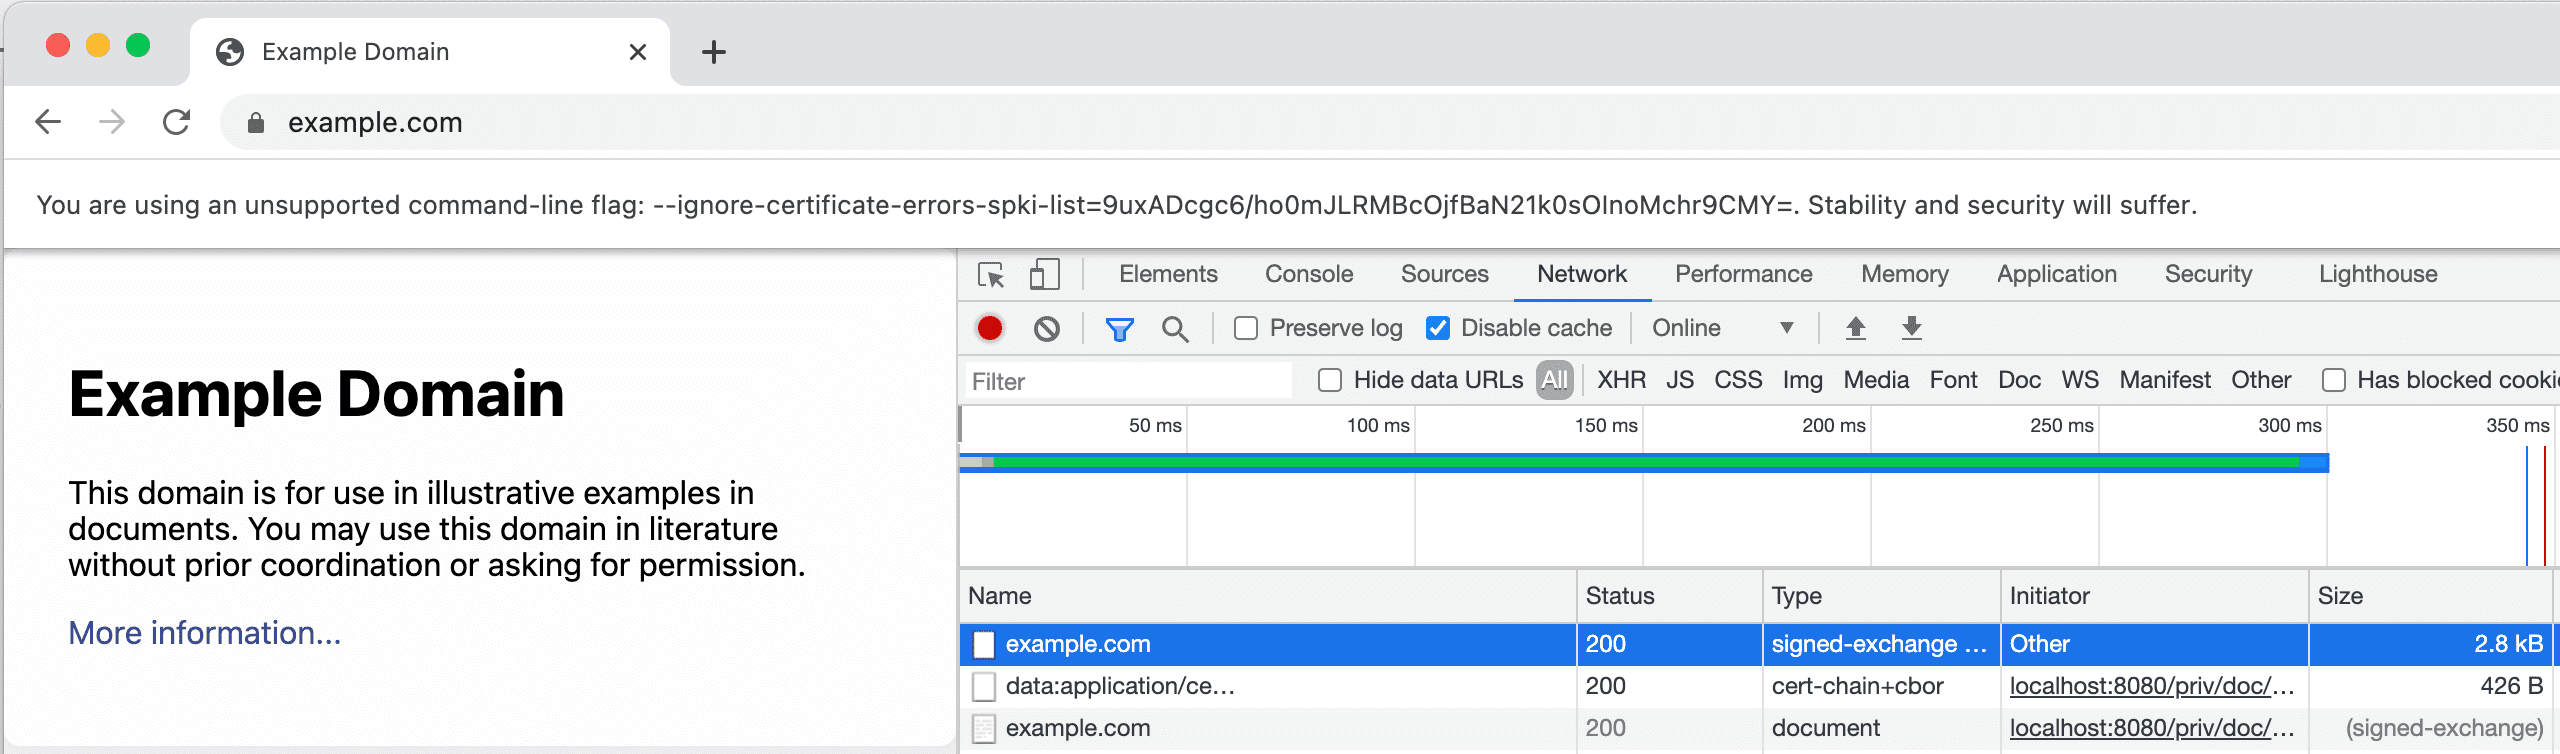 DevTools नेटवर्क टैब का स्क्रीनशॉट, जिसमें एसएक्सजी और उसका सर्टिफ़िकेट दिख रहा है.